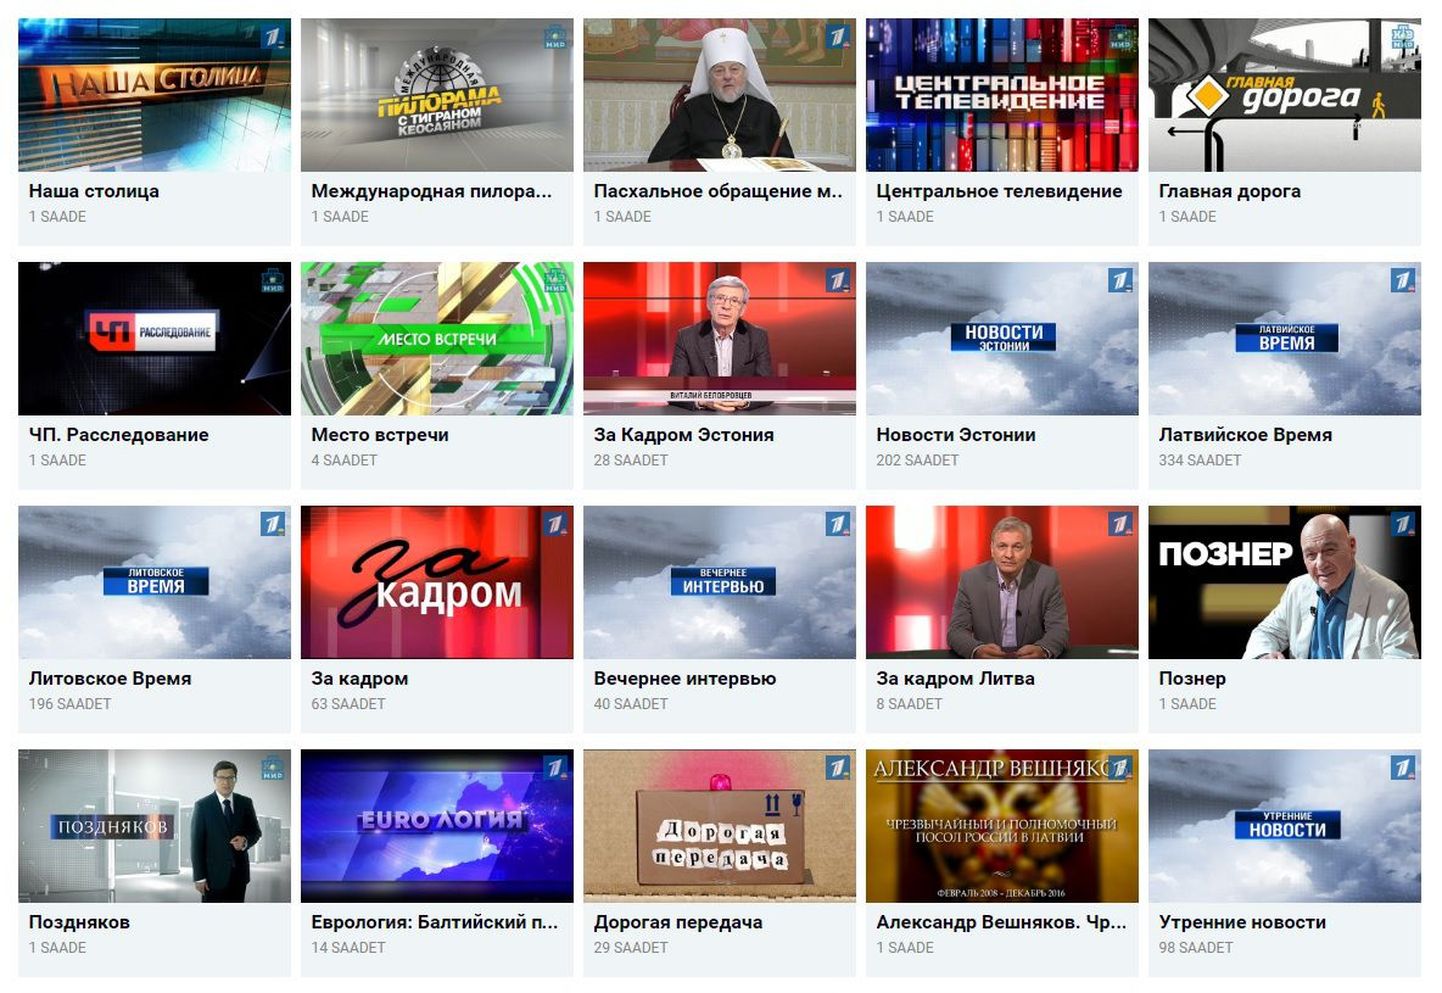 Tvdom.lv незаконно транслировал российские телеканалы.